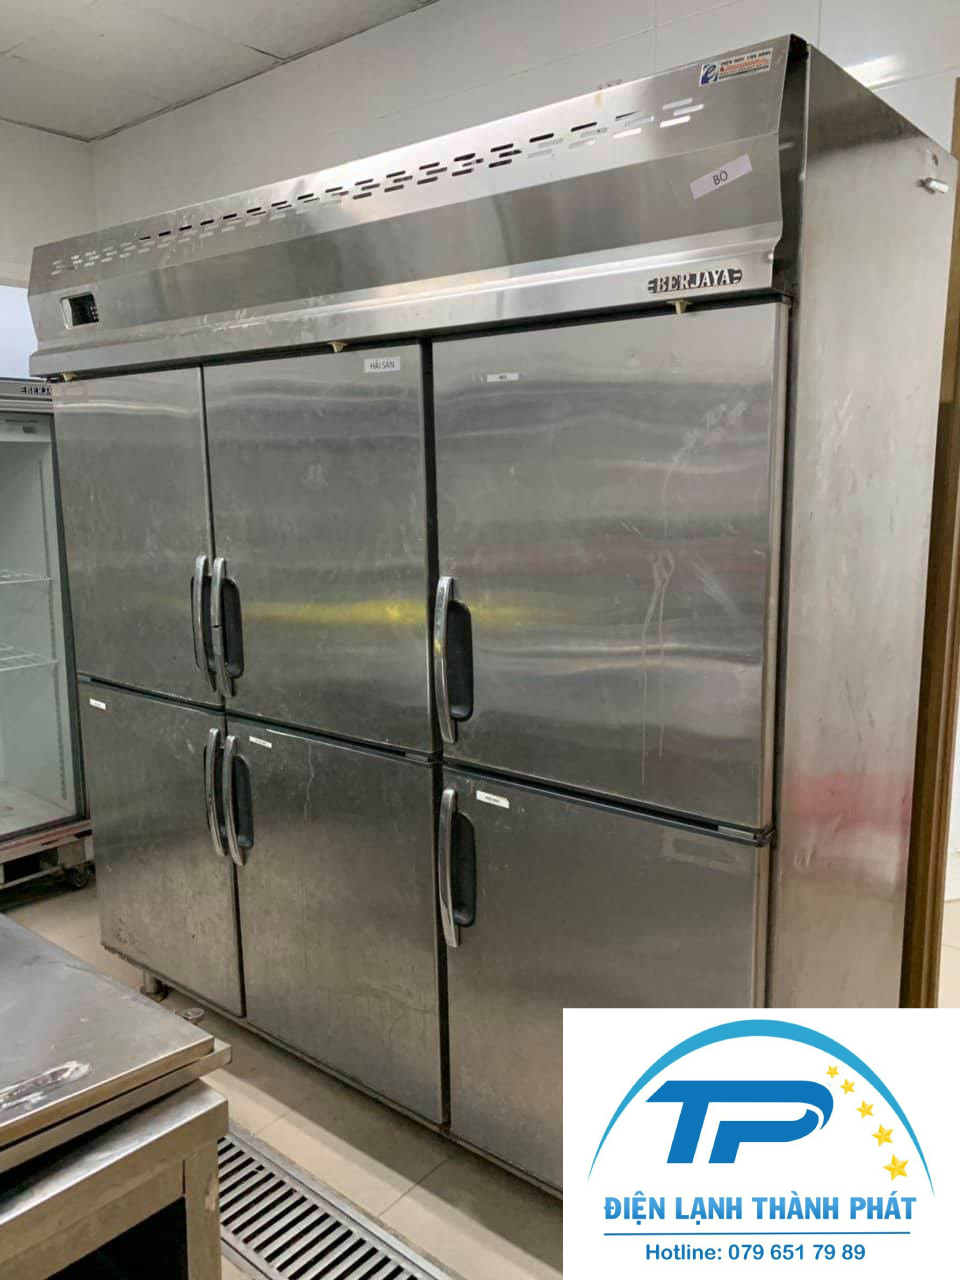 Sửa tủ lạnh công nghiệp Điện lạnh Thành Phát là dịch vụ có quy trình làm việc chuyên nghiệp.